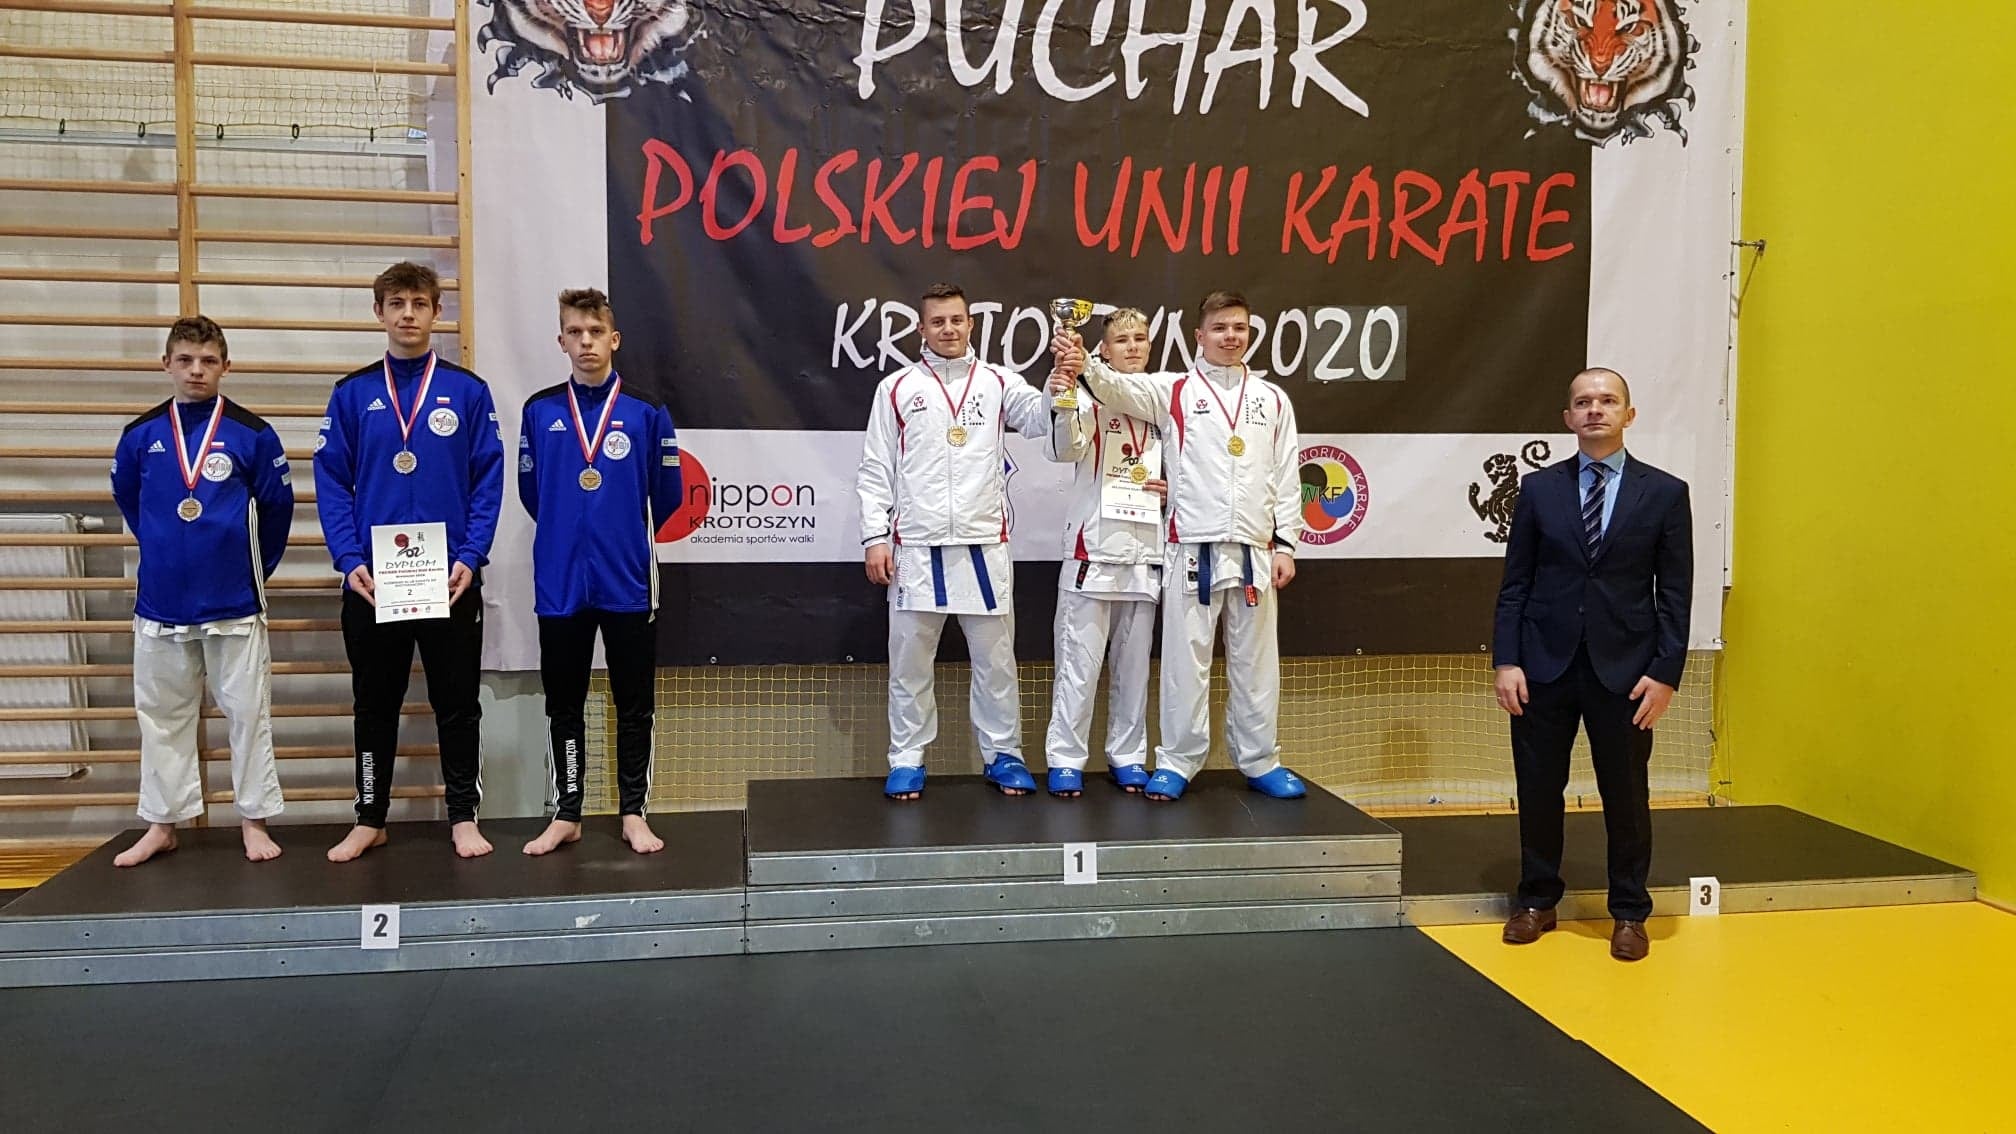 Puchar Polskiej Unii Karate w Krotoszynie